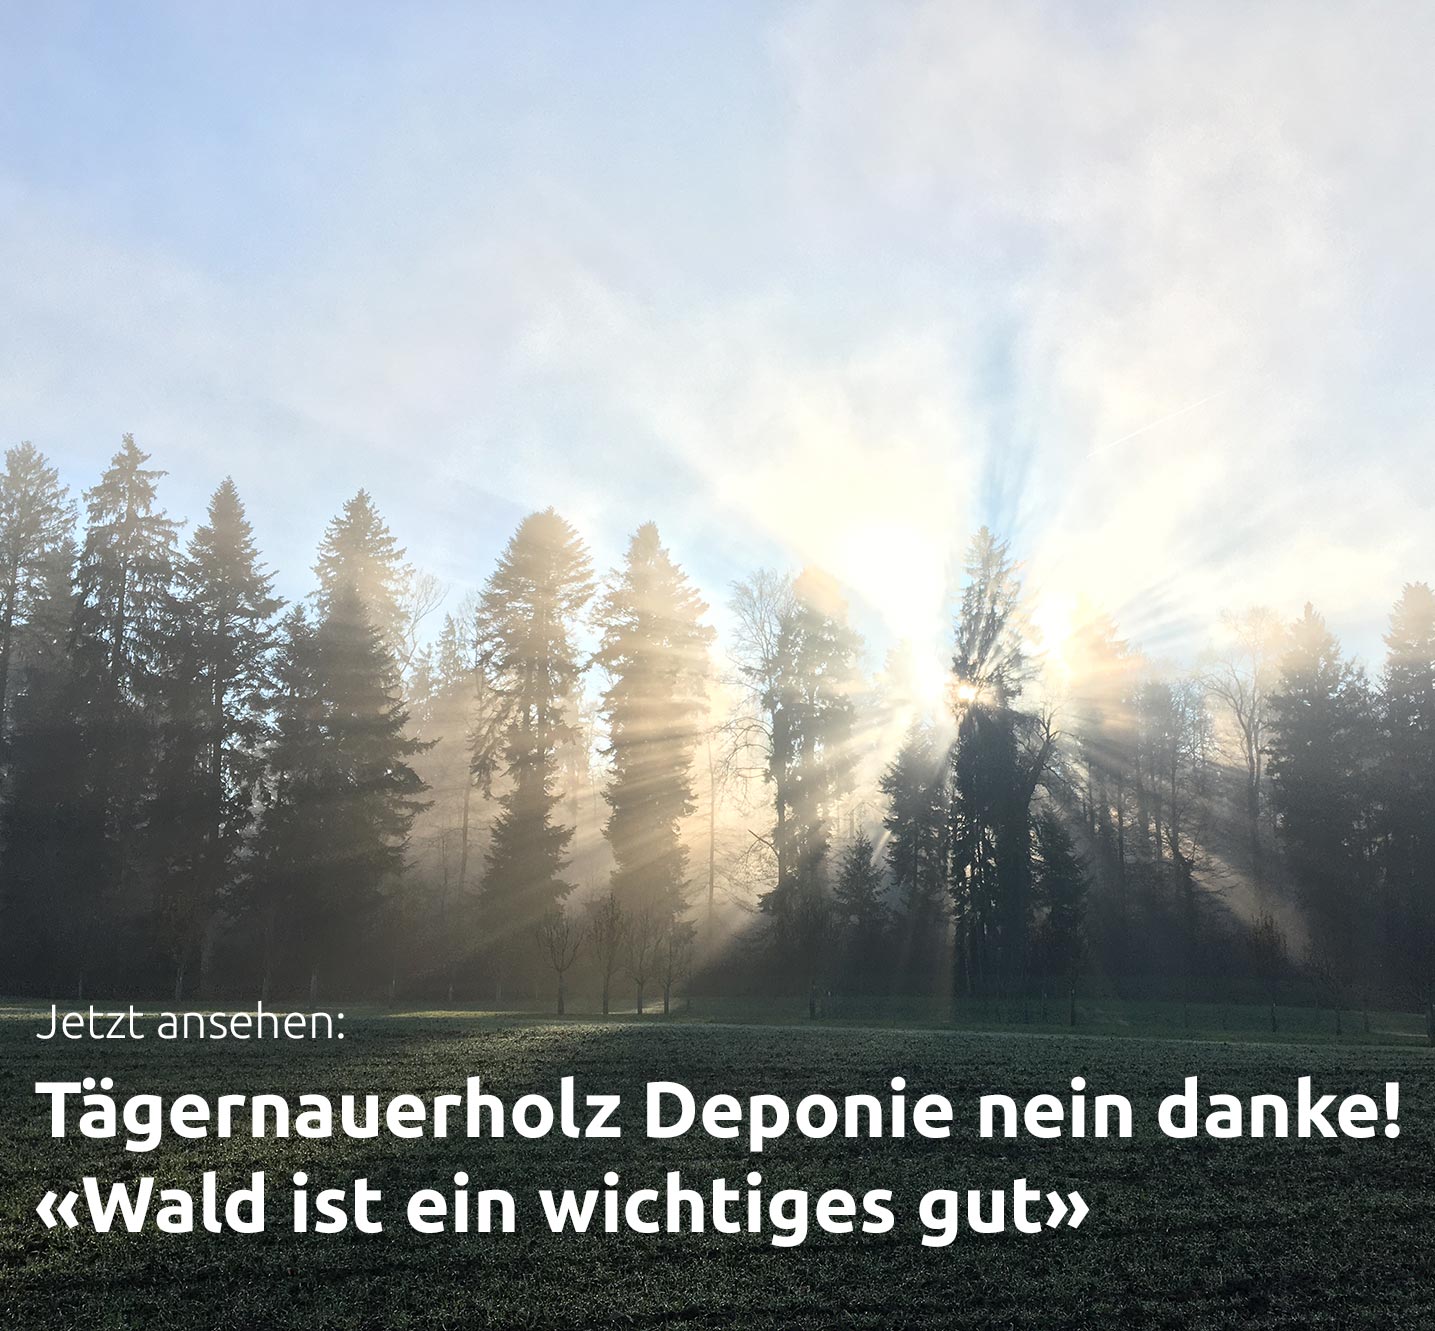 Daniel Wäfler setzt sich gegen die Deponie im Tägernauerholz ein